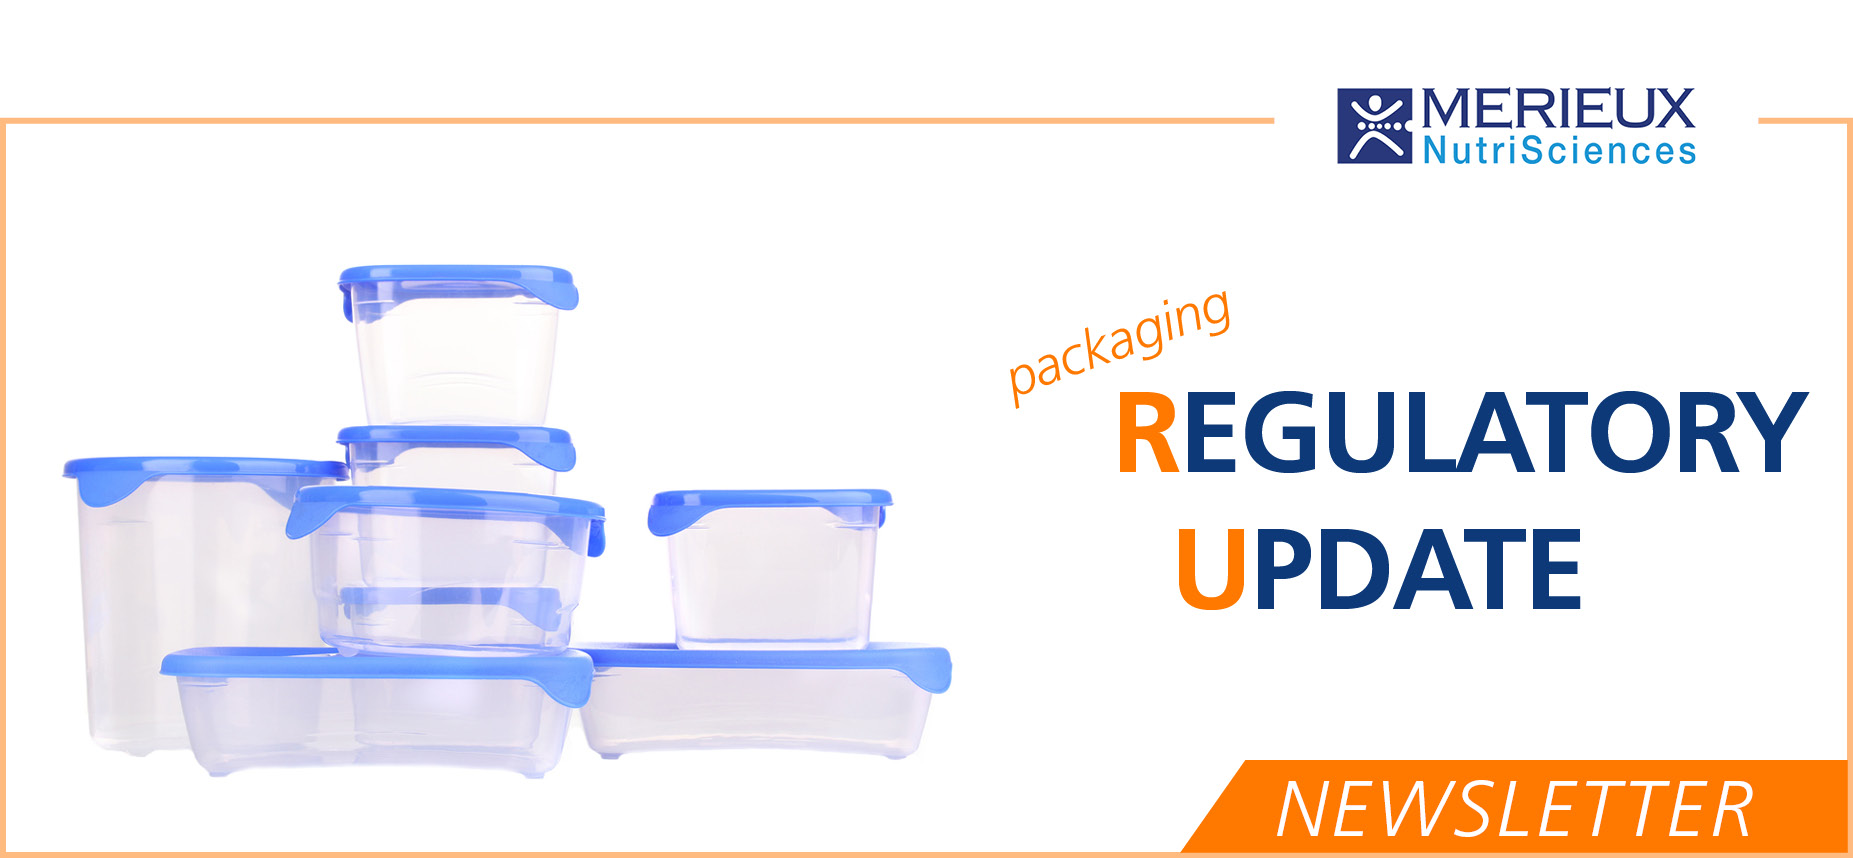 Mérieux NutriSciences - Regulatory Update - Newsletter - Packaging